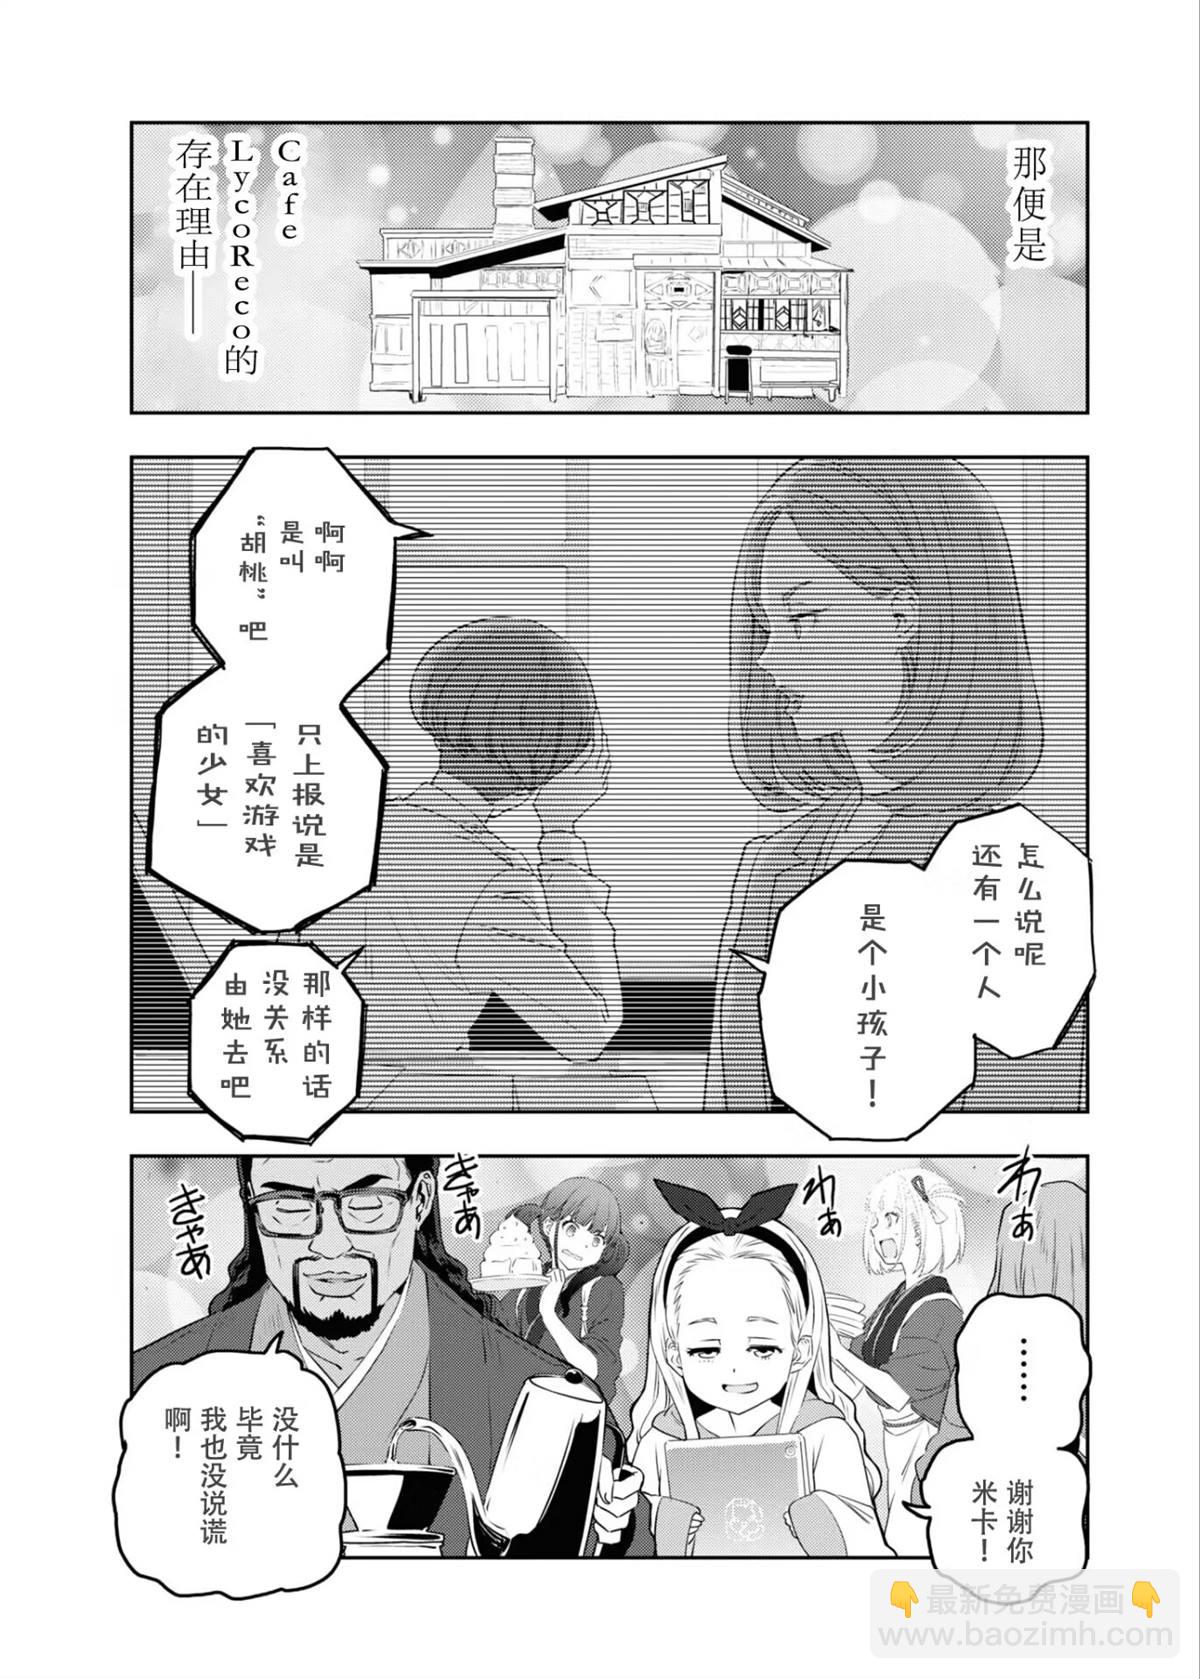 莉可麗絲官方漫畫集REACT - 第1話 - 2